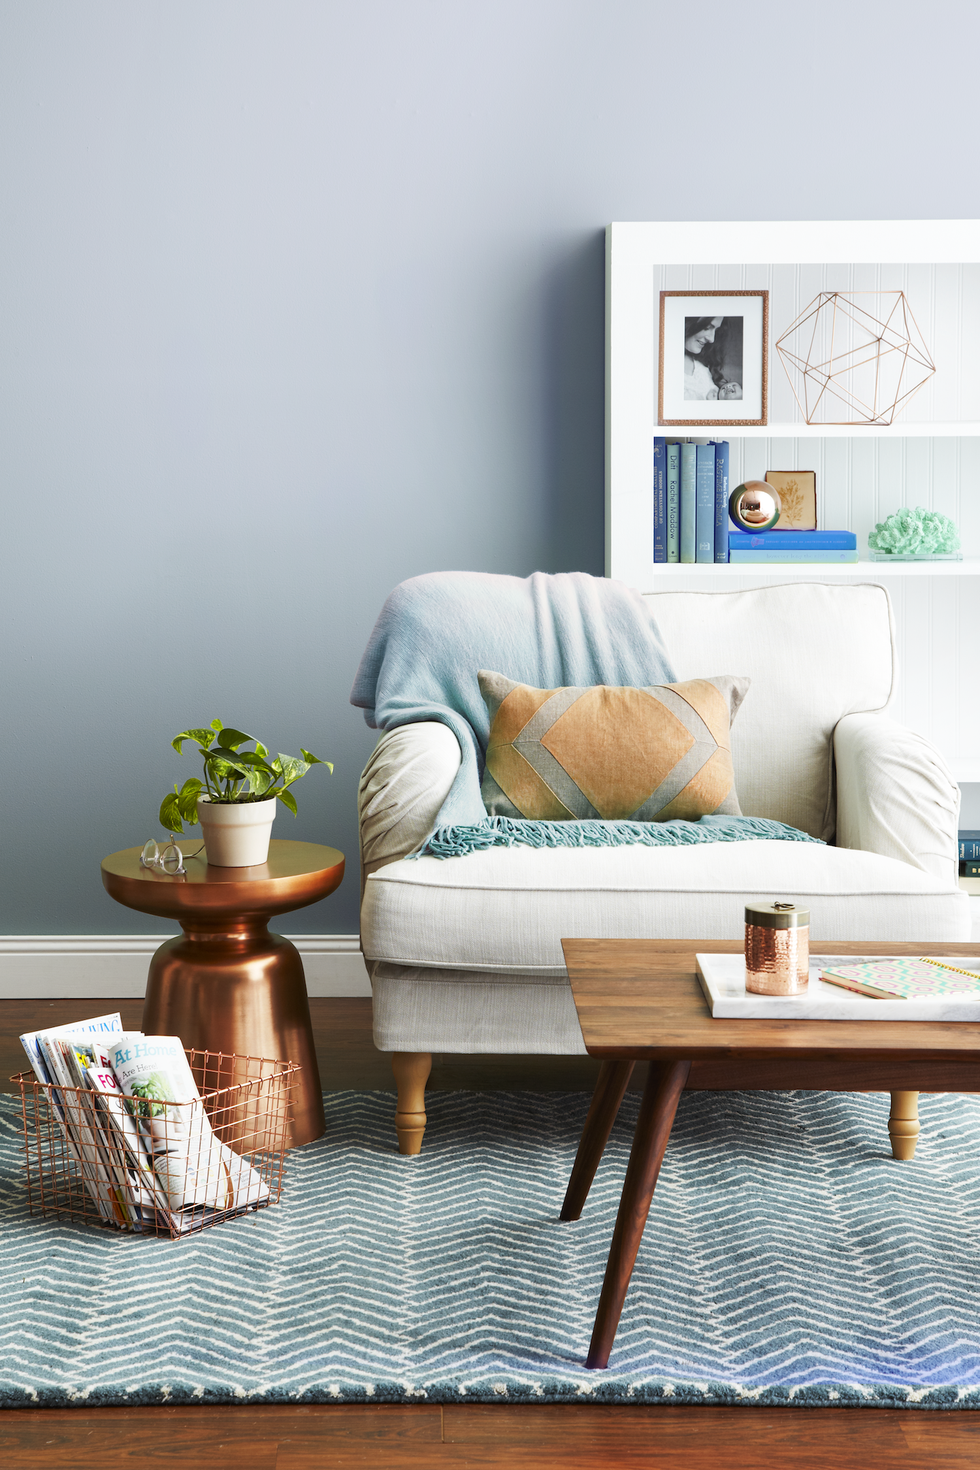 25 Best Living Room Paint Color Ideas   Top Living Room Paint Colors